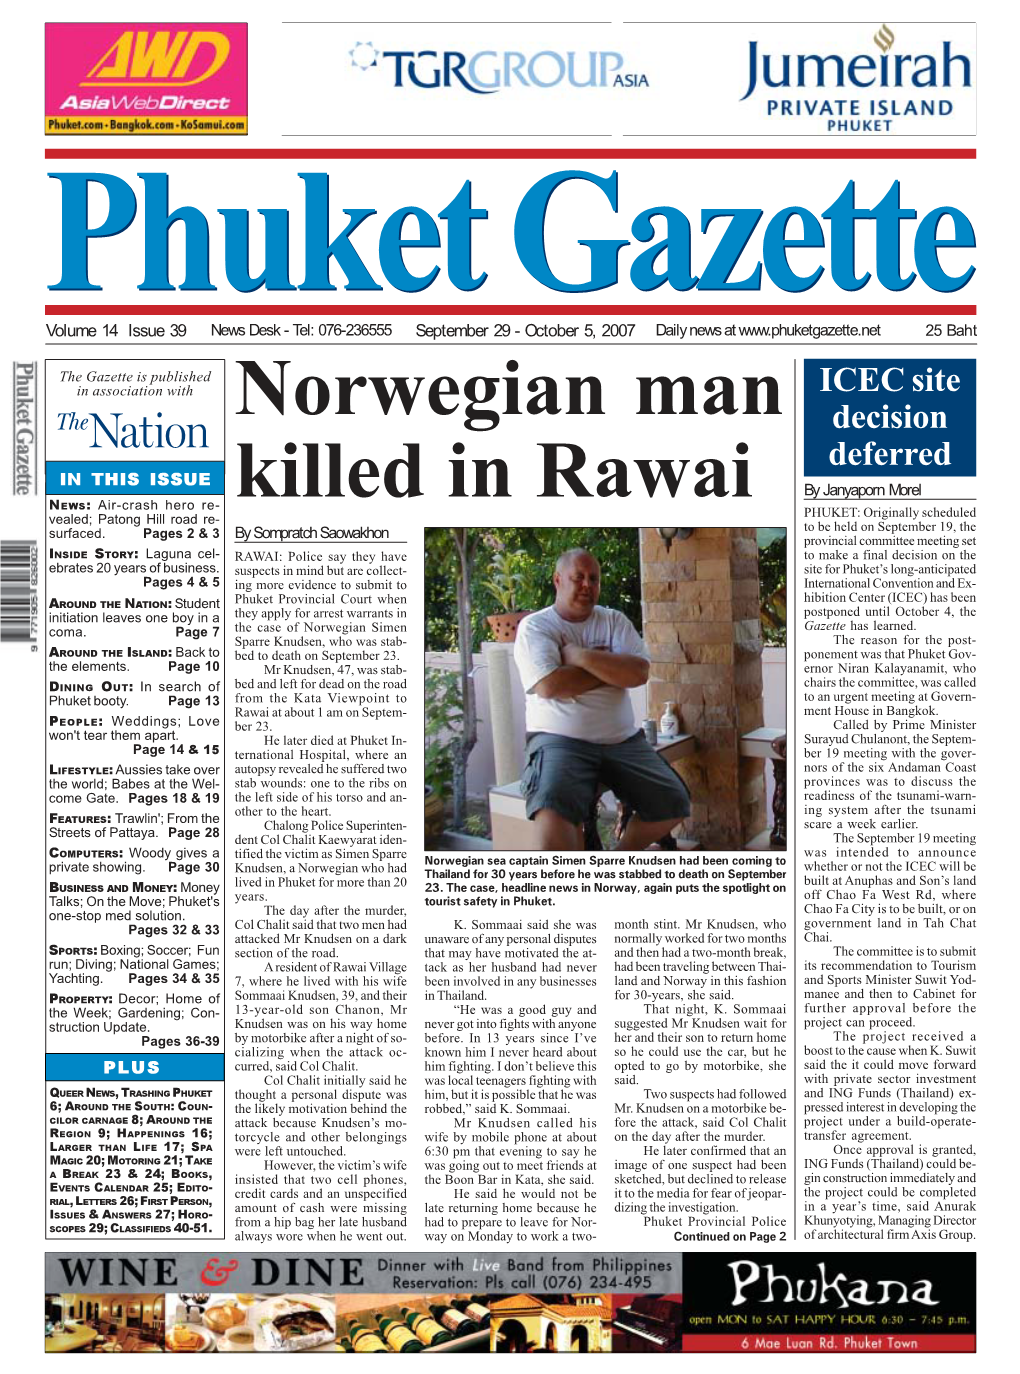 Norwegian Man Killed in Rawai